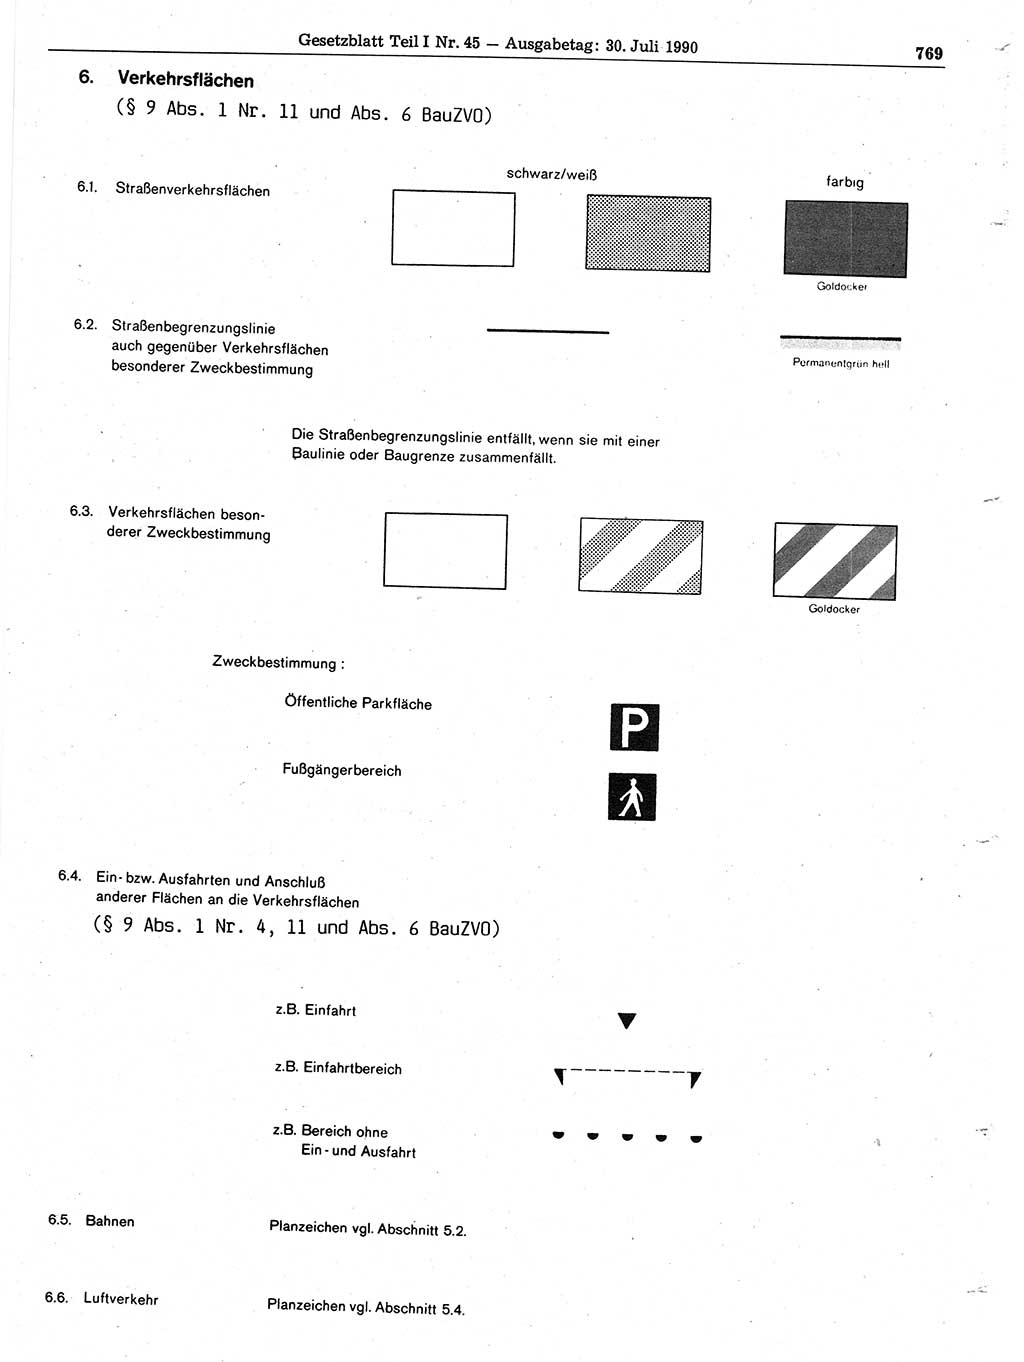 Gesetzblatt (GBl.) der Deutschen Demokratischen Republik (DDR) Teil Ⅰ 1990, Seite 769 (GBl. DDR Ⅰ 1990, S. 769)